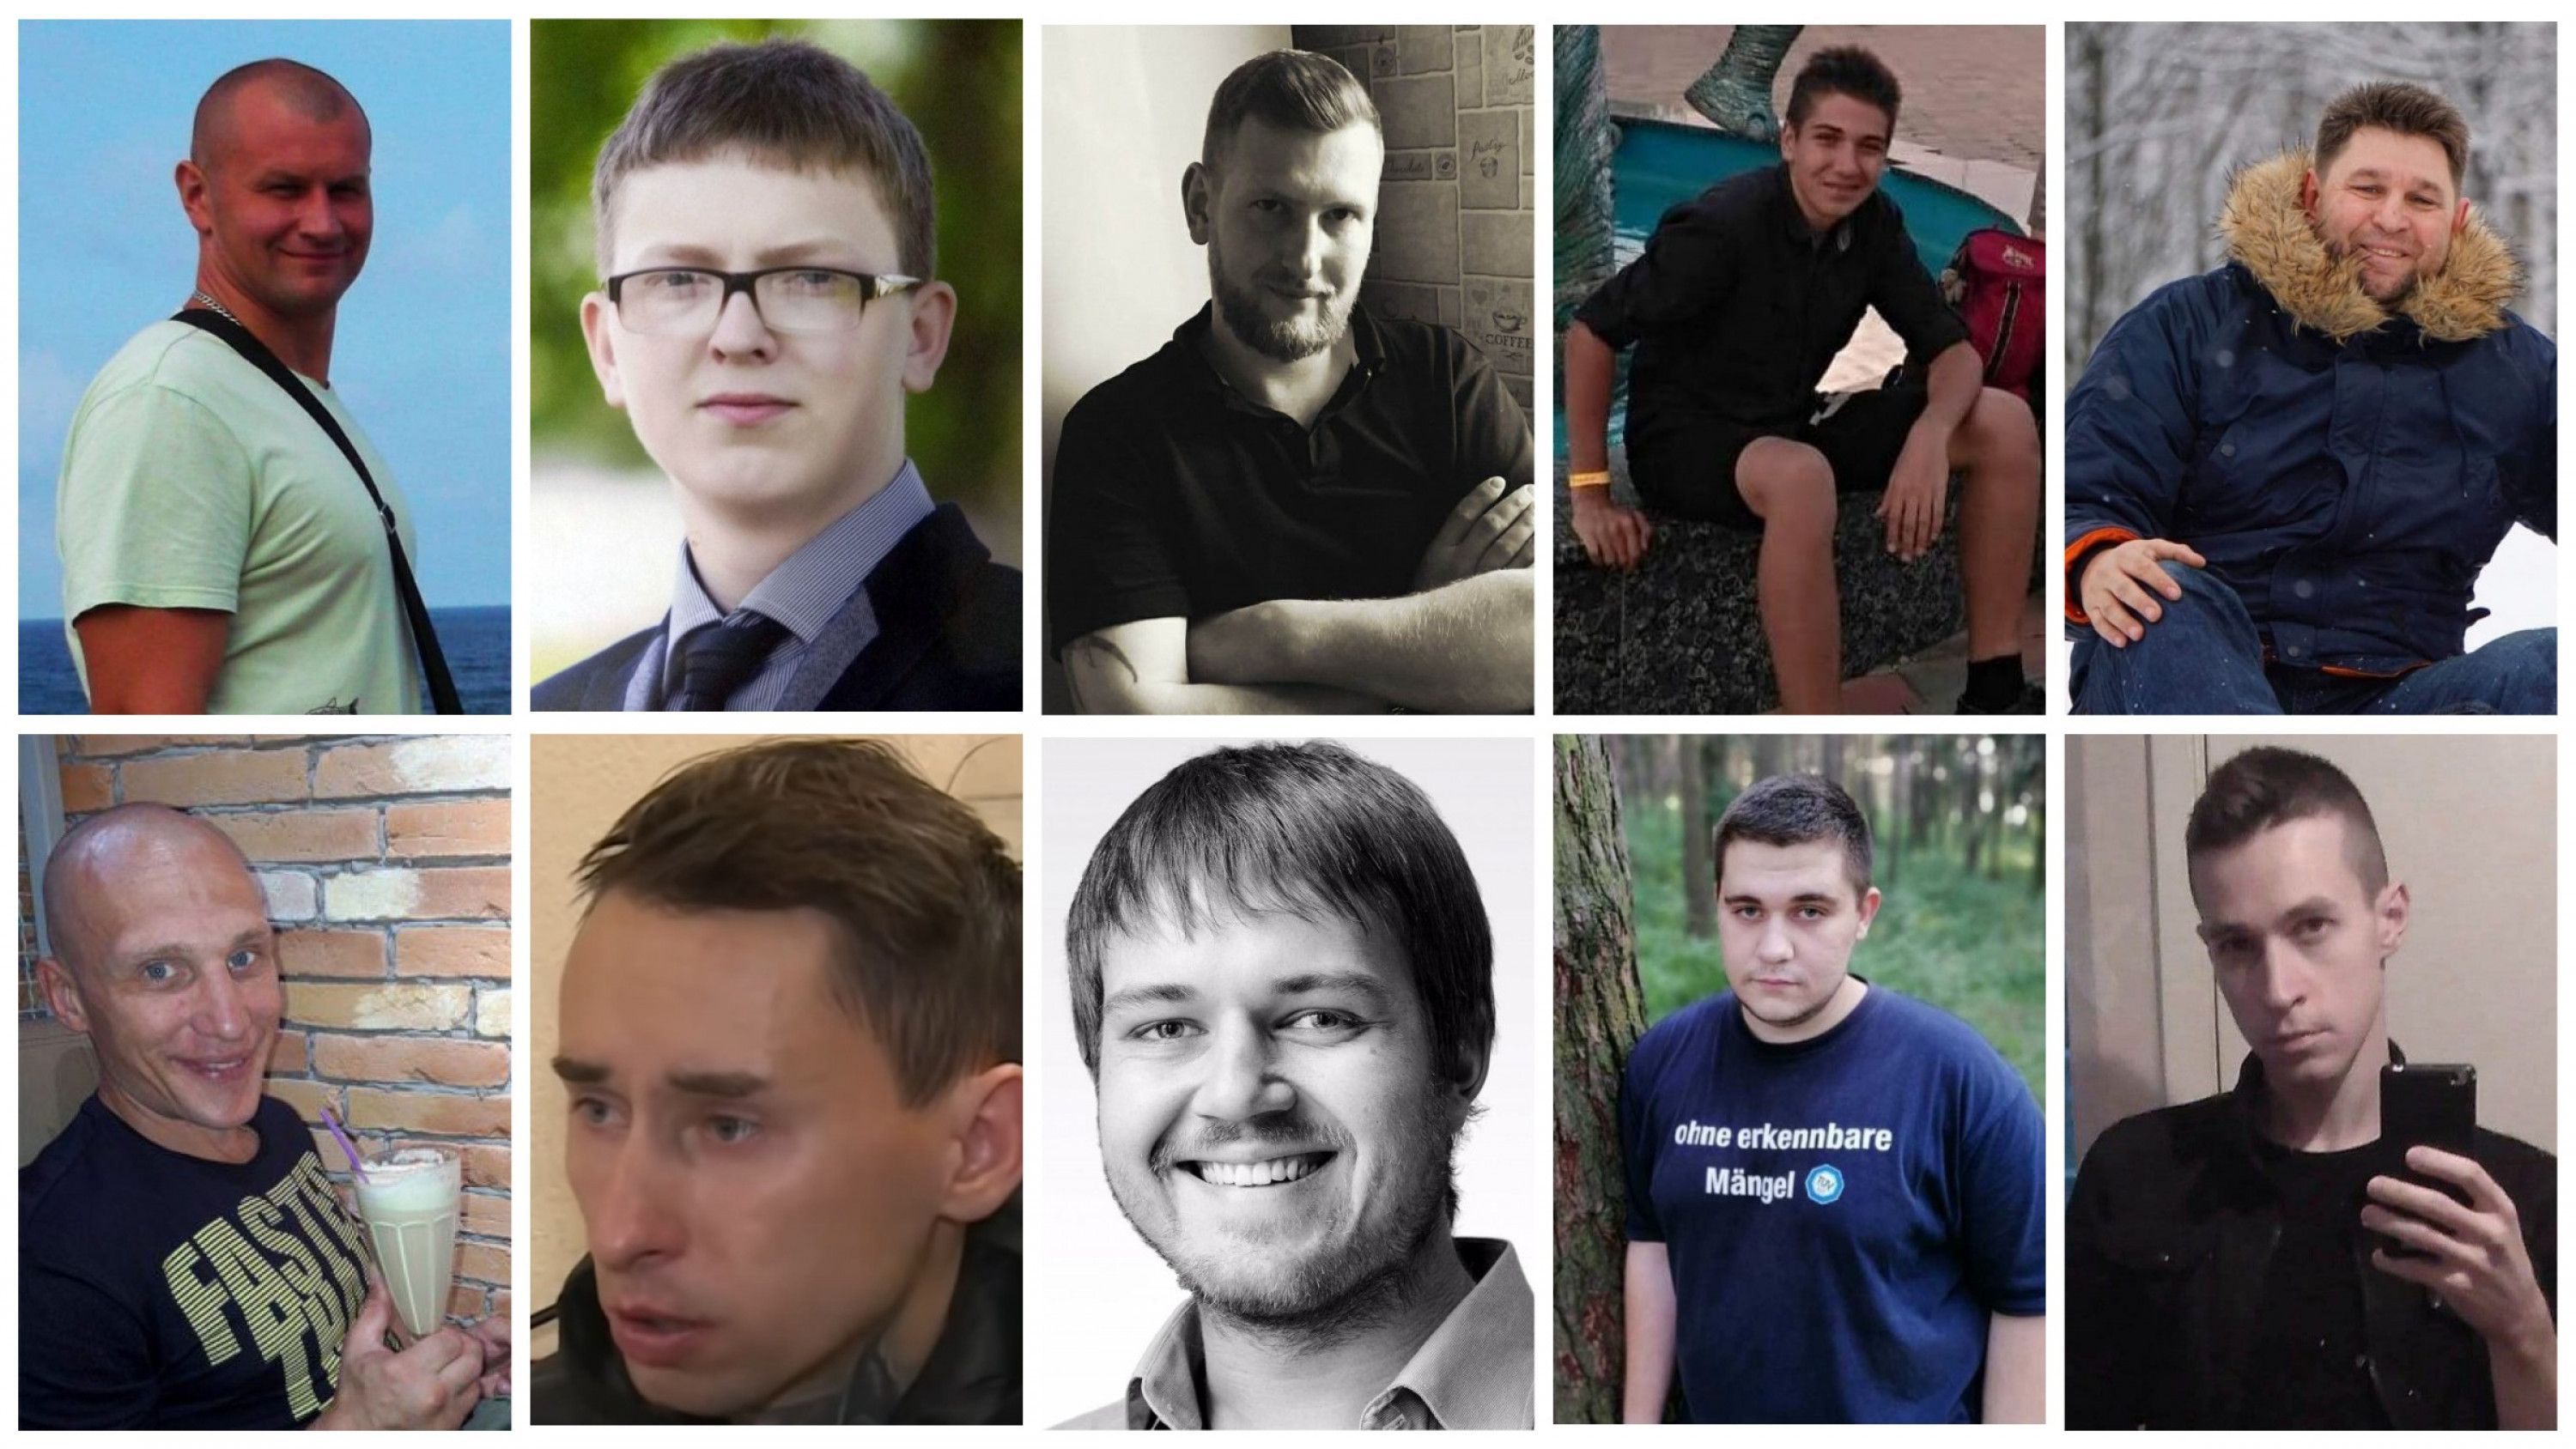 У Мінську судять 11 учасників чатів «радикального спрямування». Прокурор запросив для них від 5 до 9 років колонії посиленого режиму